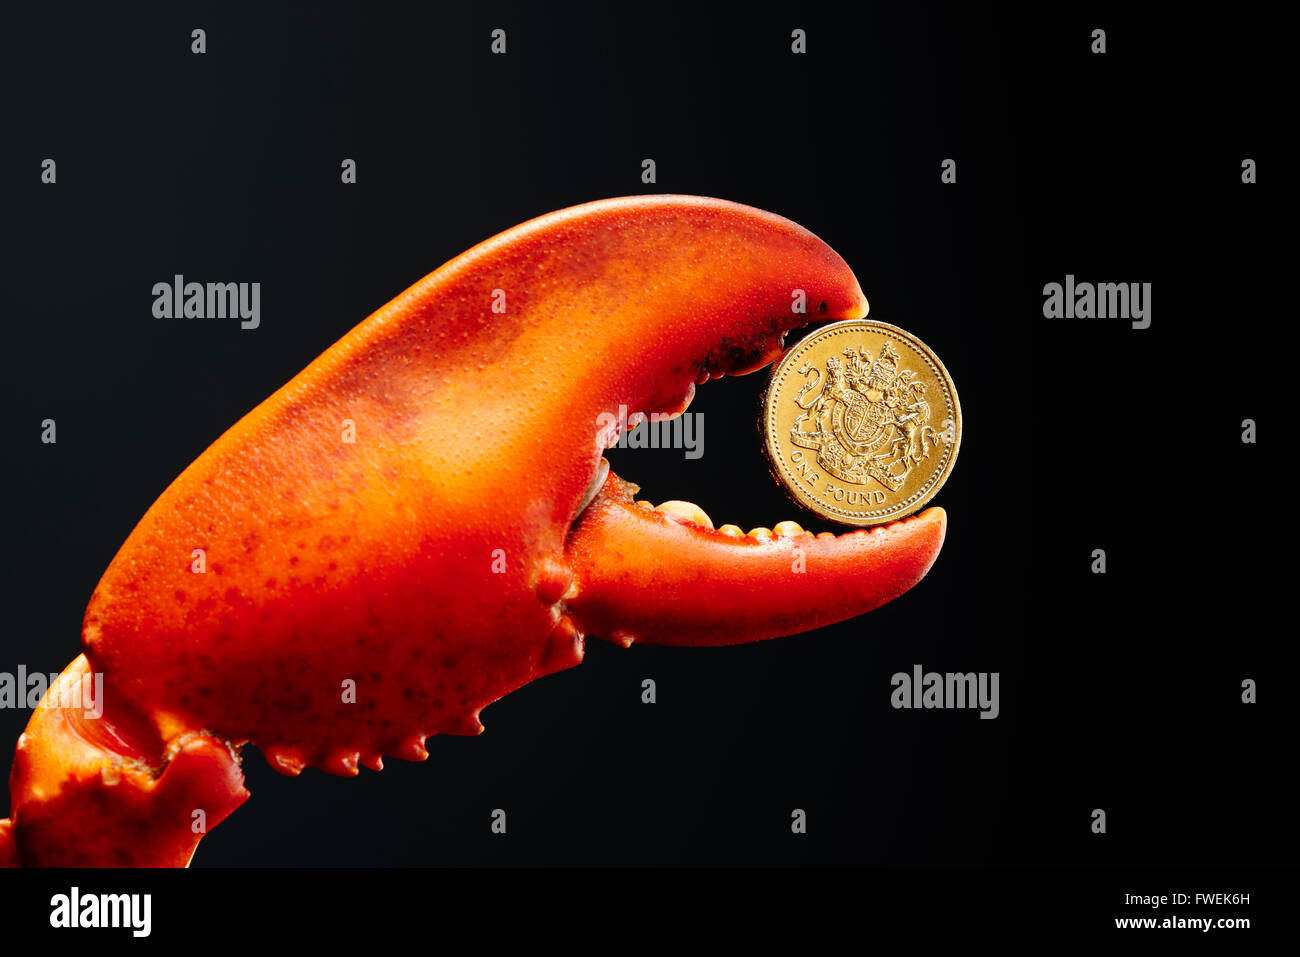 Pound coins en griffe de homard Banque D'Images